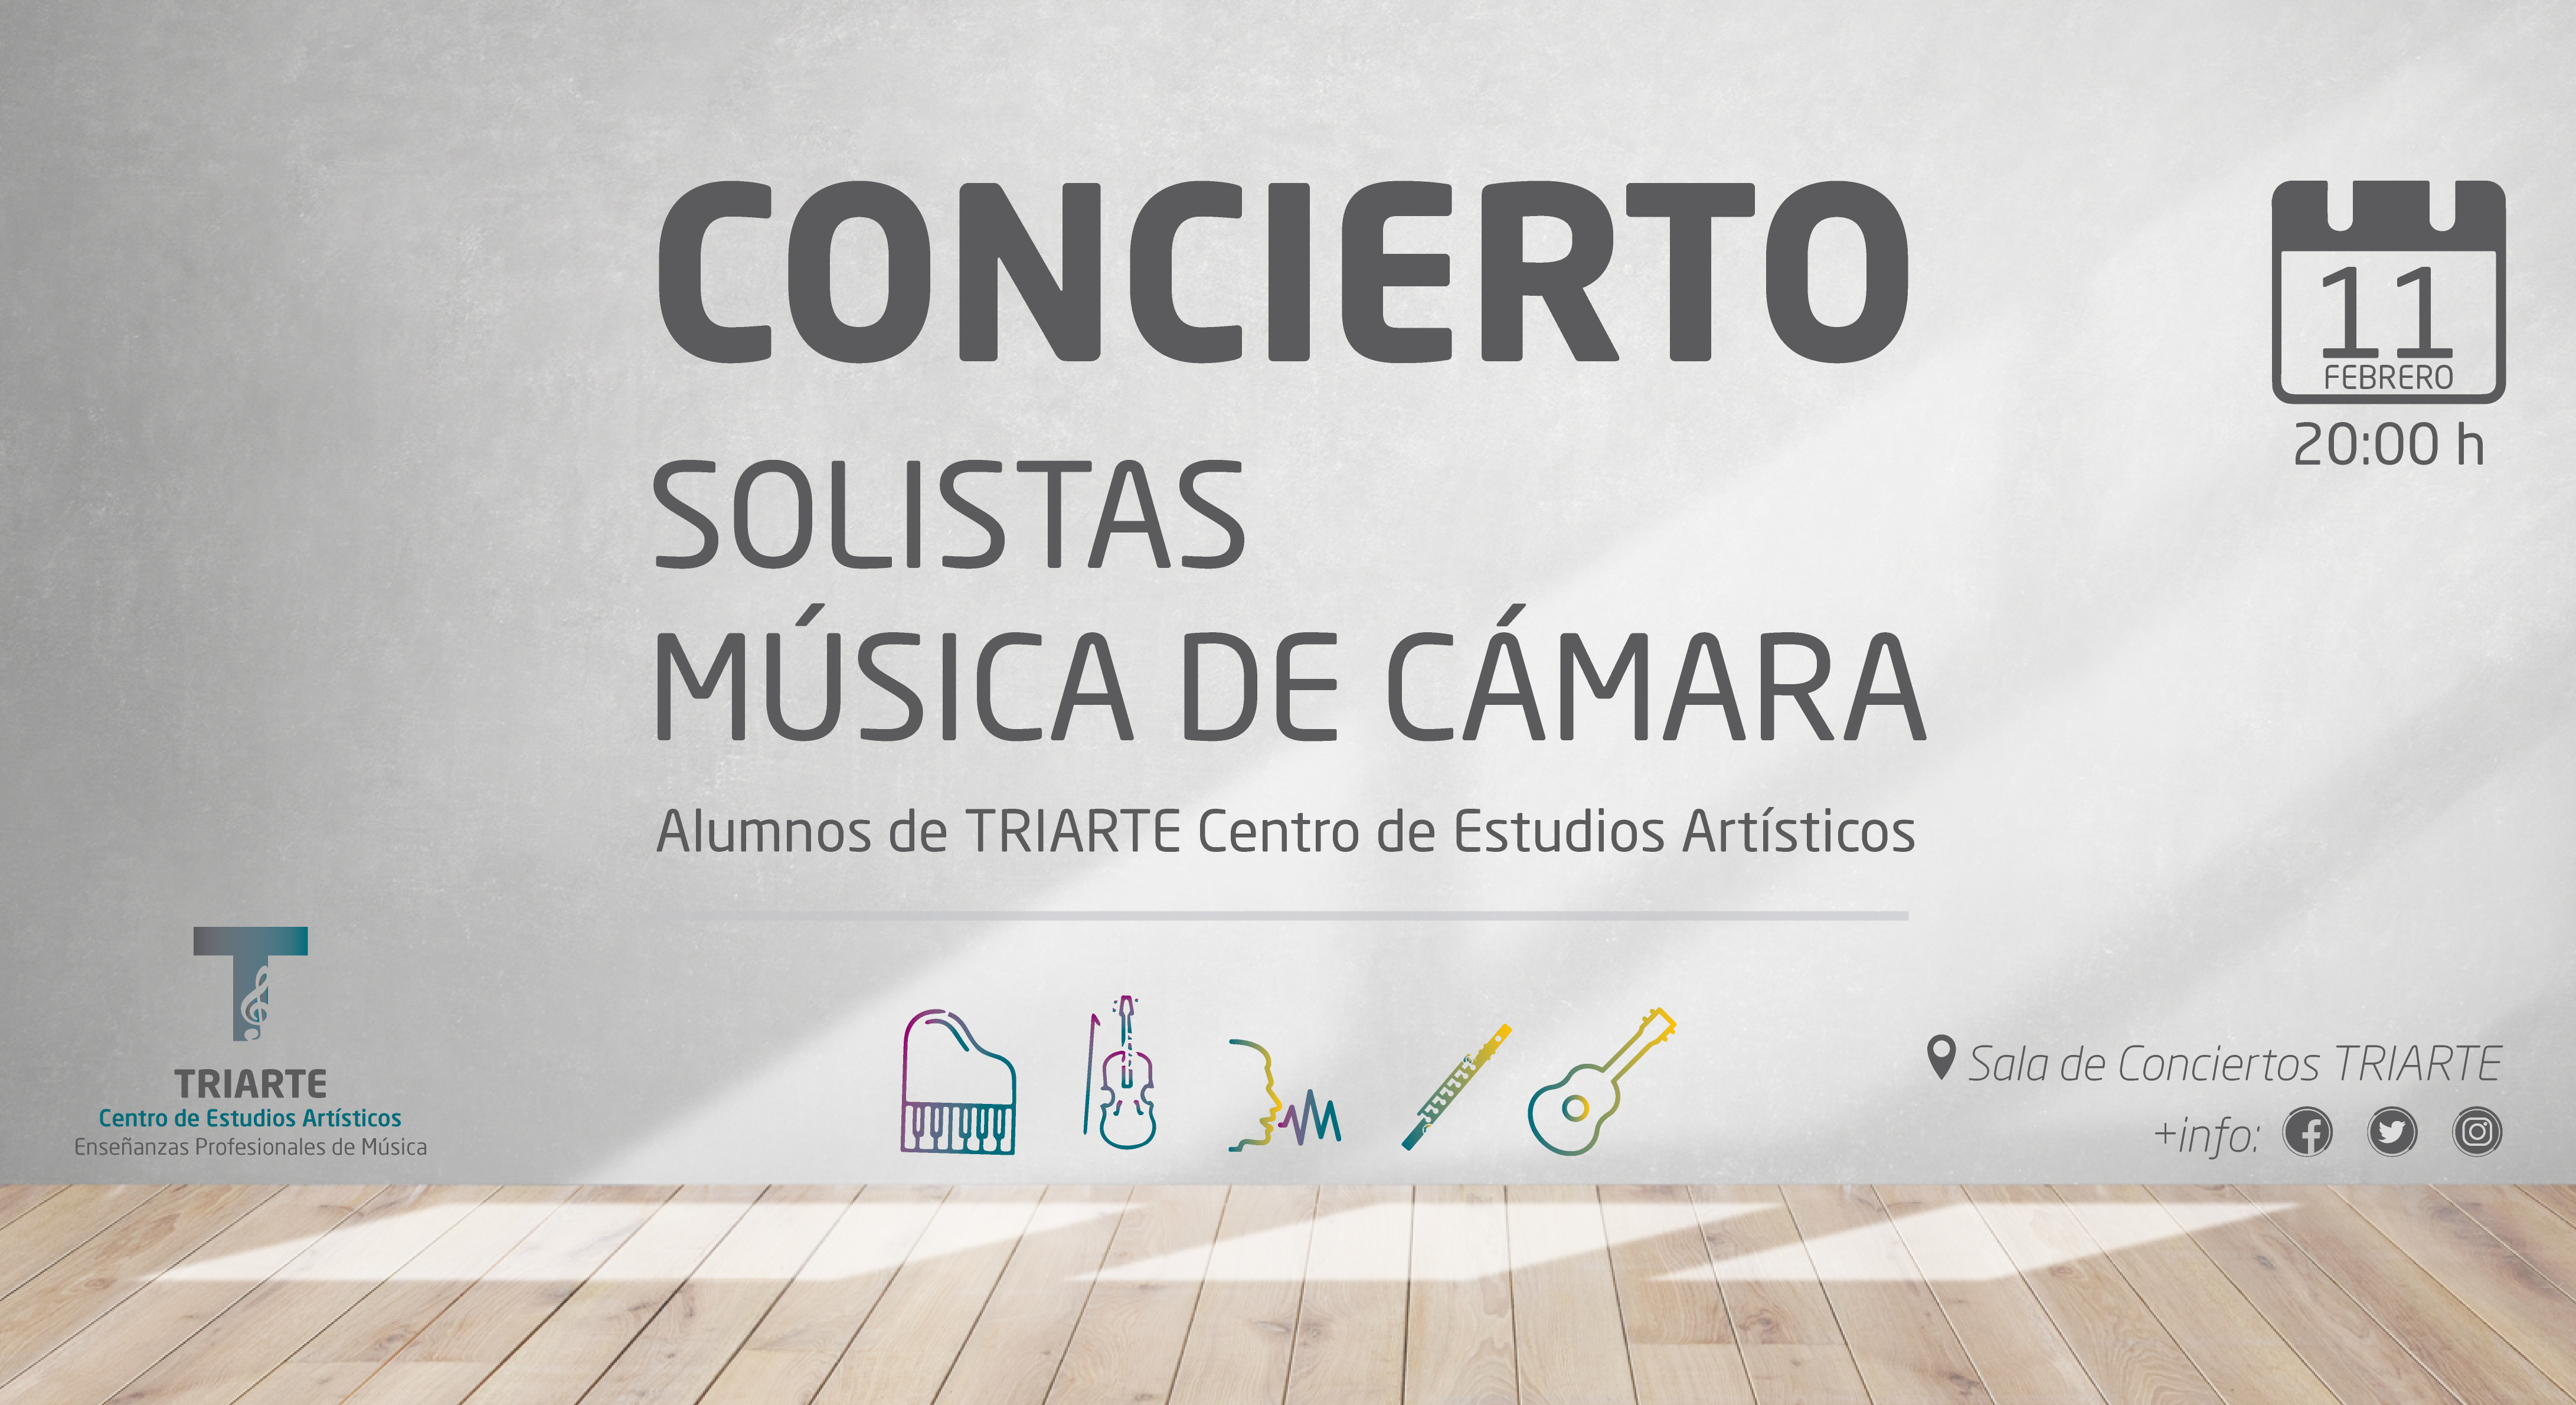 Concierto de Música de Cámara y Solistas - Triarte Málaga. Lunes 11 de febrero de 2019. Entrada Gratuita. Violín, Canto, Flauta, Guitarra y Piano.